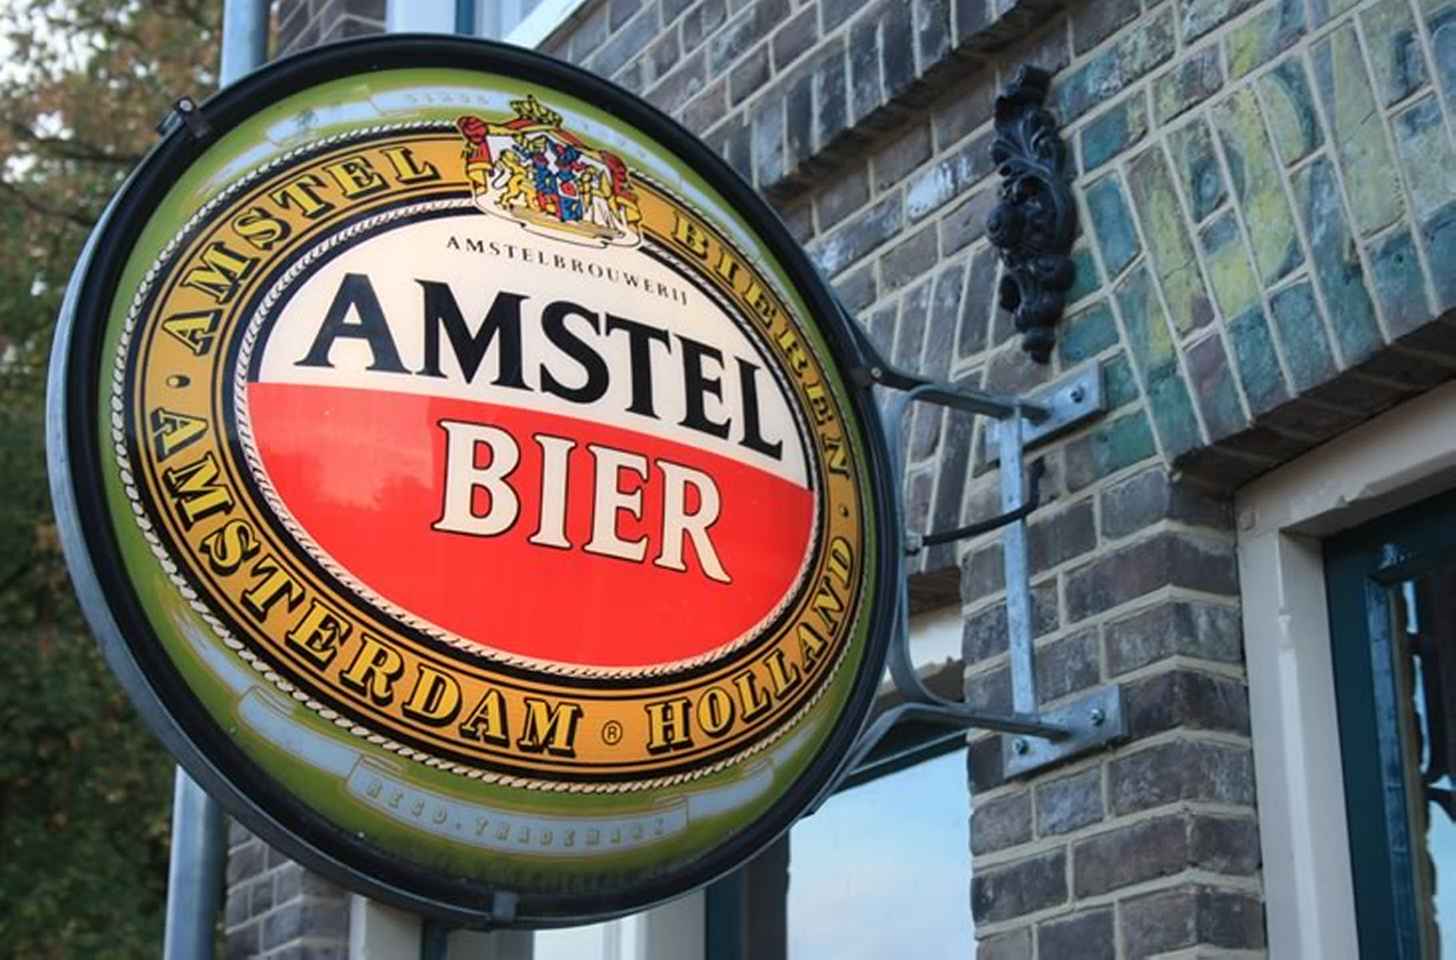 Амстел пиво: история, виды + интересные факты